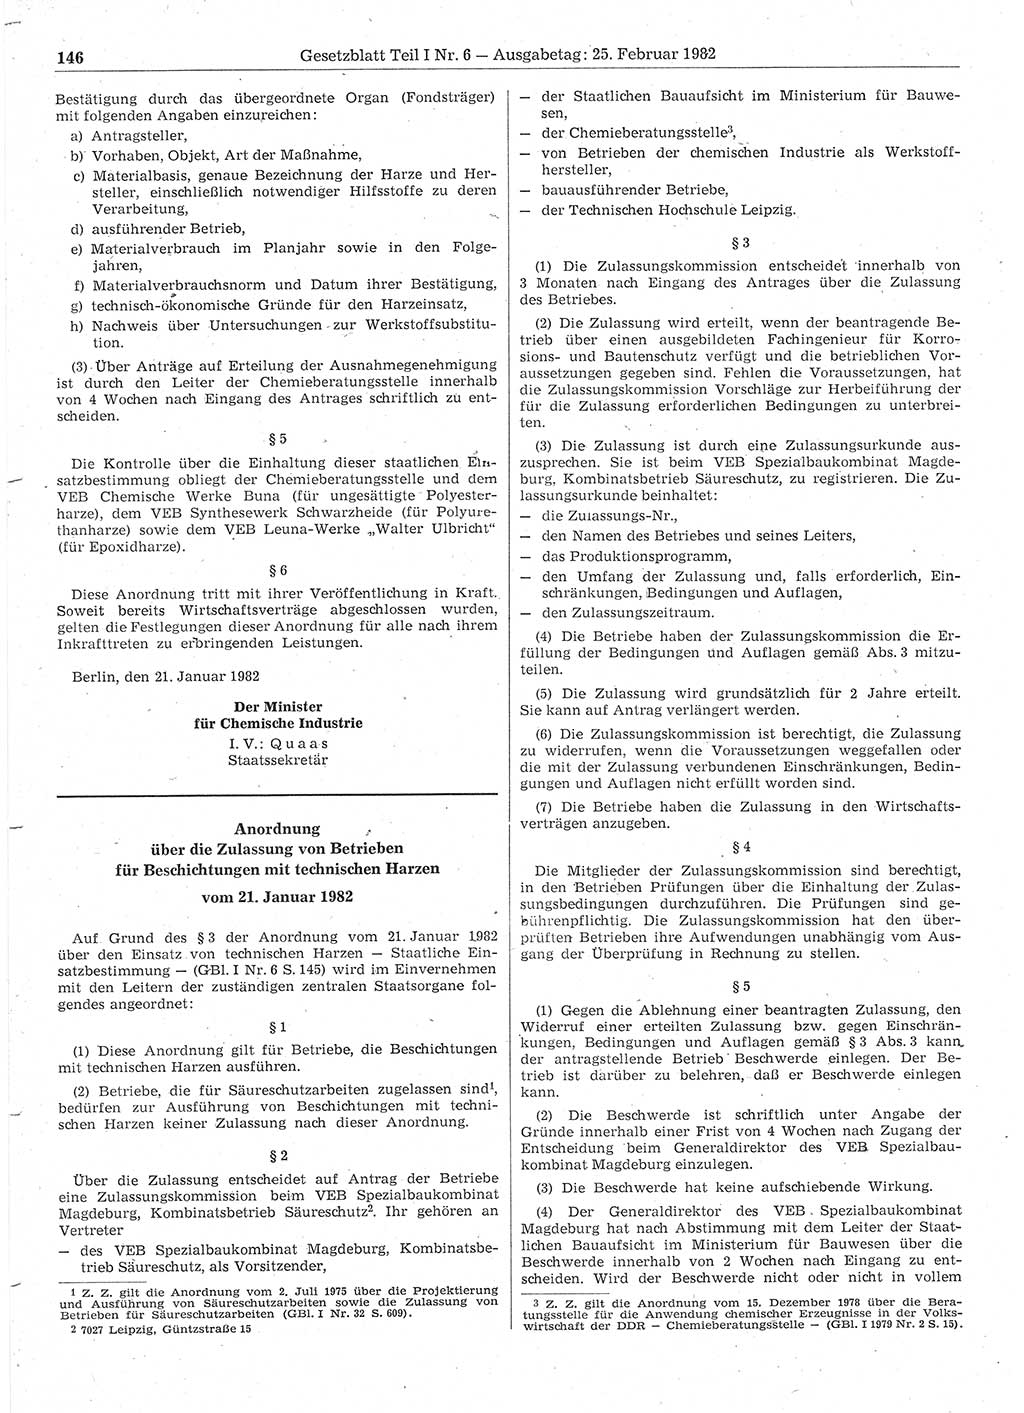 Gesetzblatt (GBl.) der Deutschen Demokratischen Republik (DDR) Teil Ⅰ 1982, Seite 146 (GBl. DDR Ⅰ 1982, S. 146)